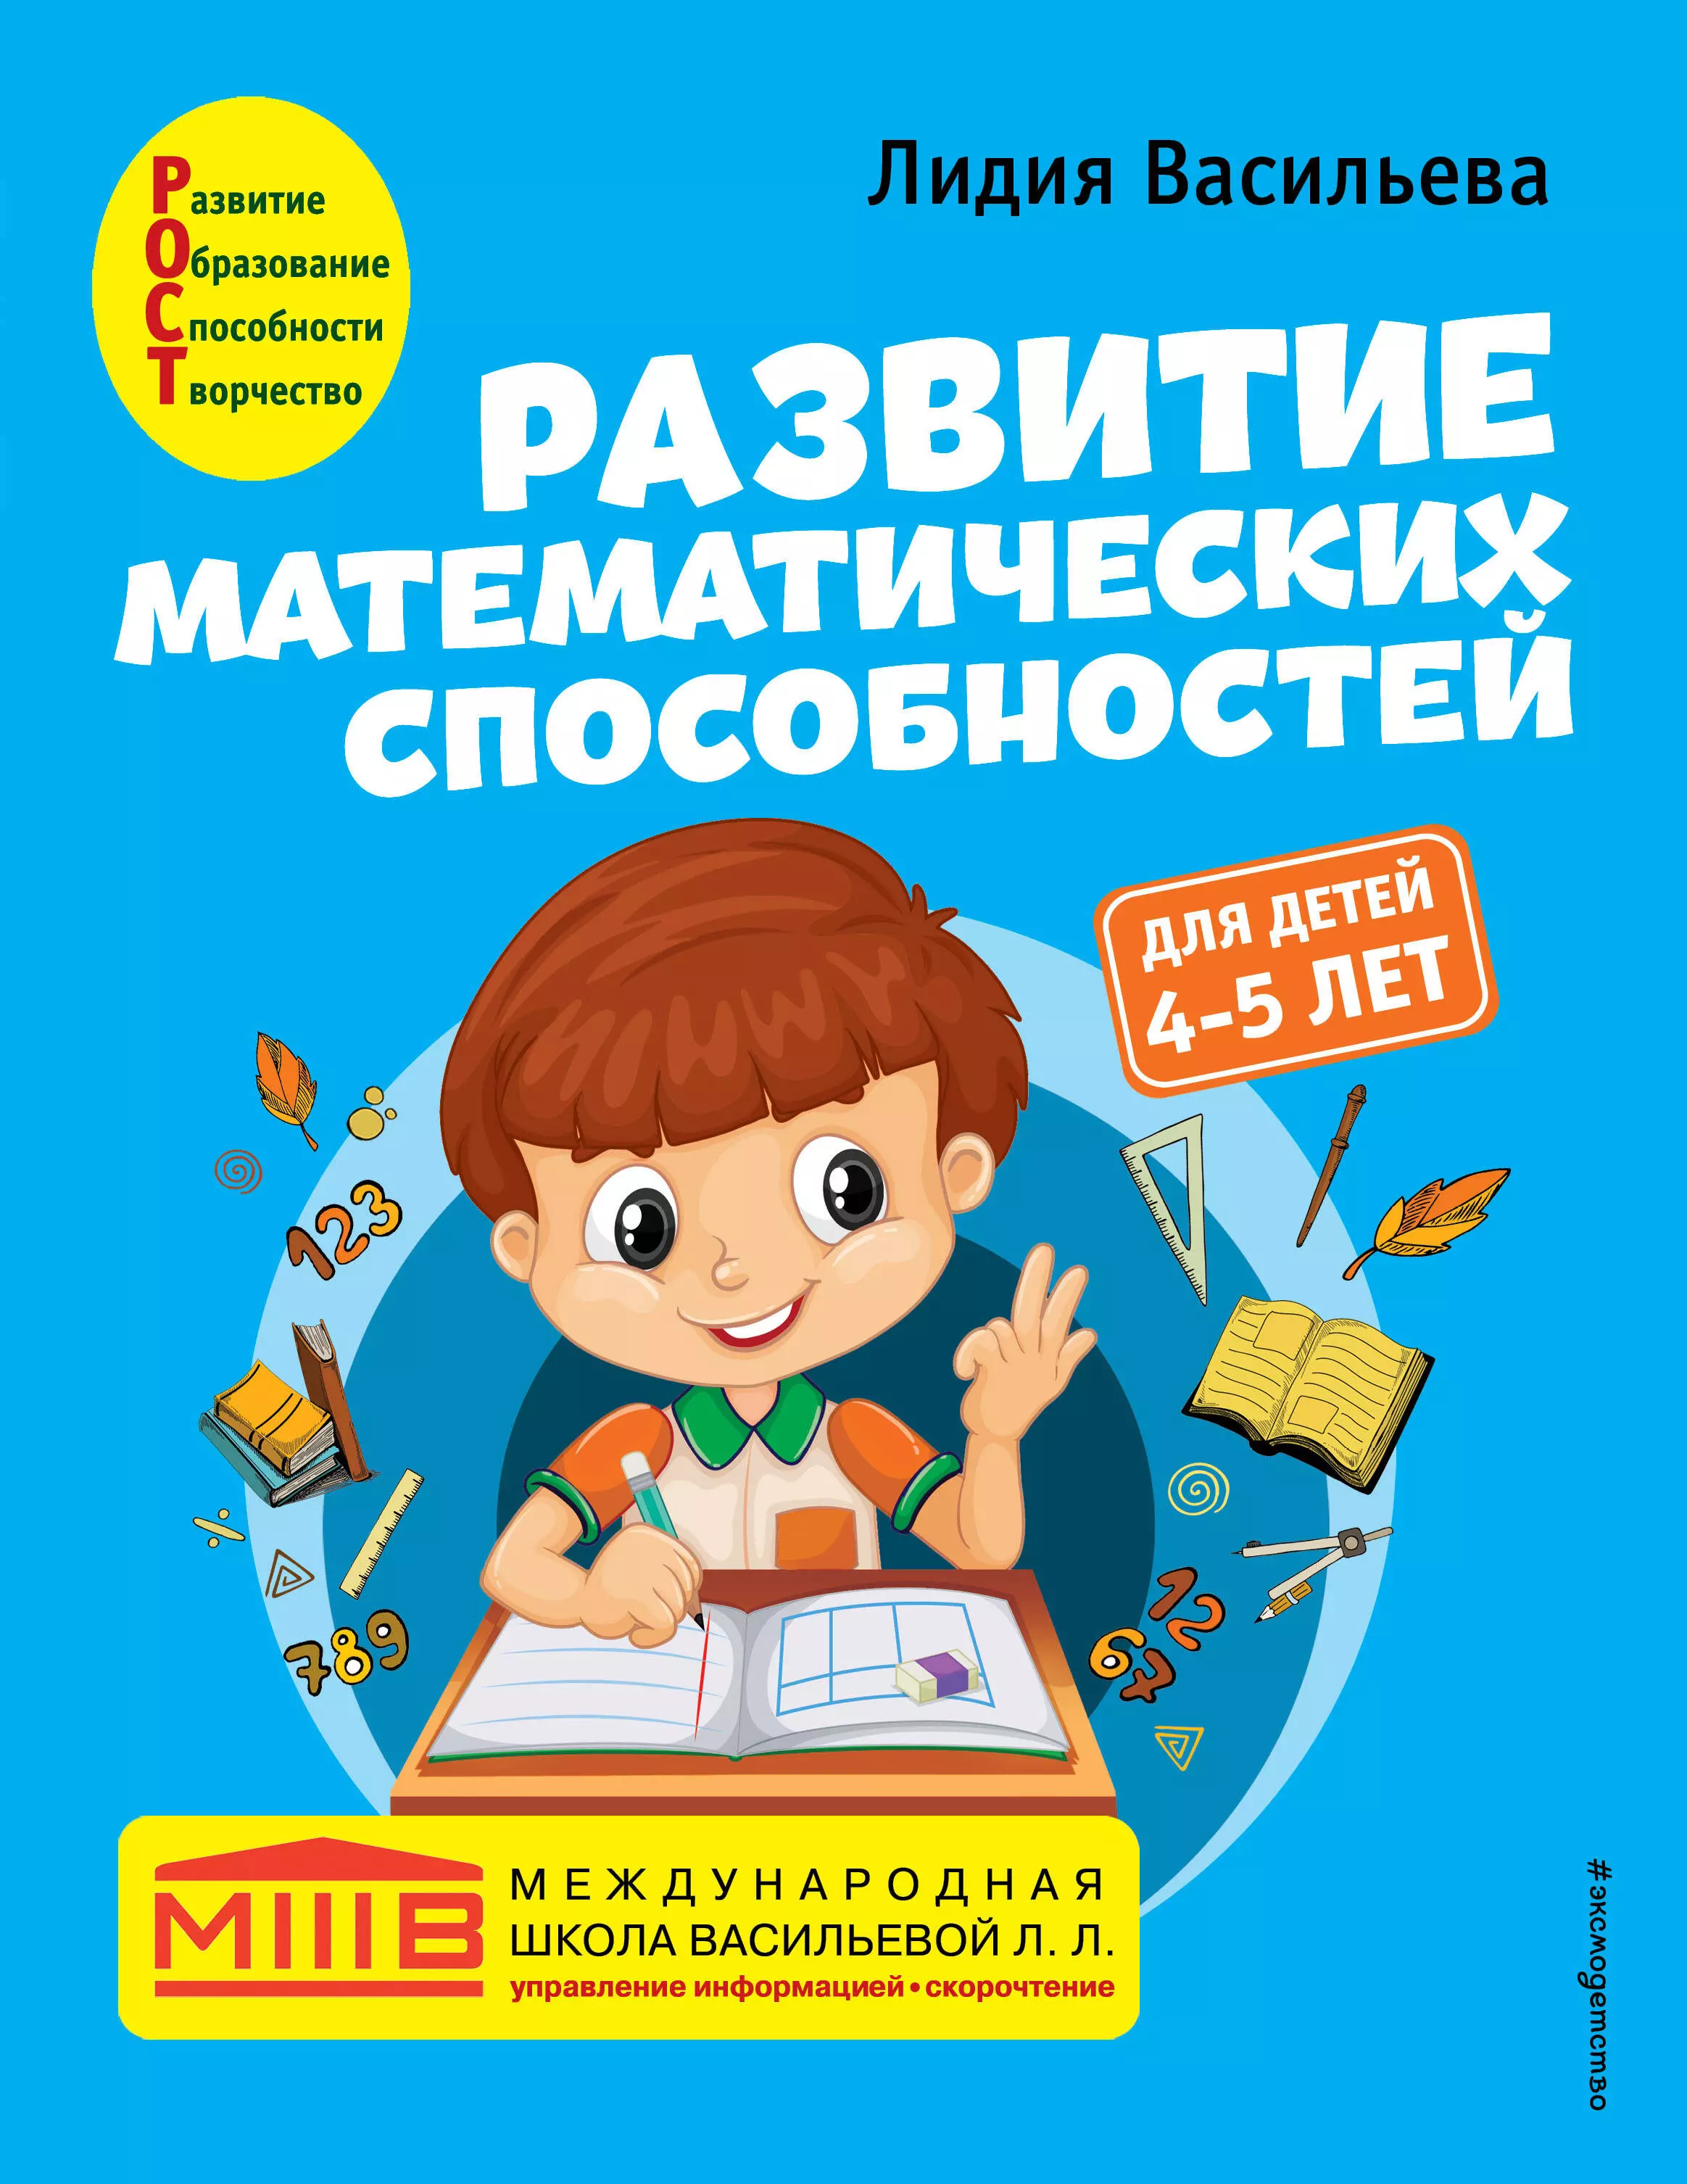 Васильева Лидия Л. Развитие математических способностей: для детей 4-5 лет